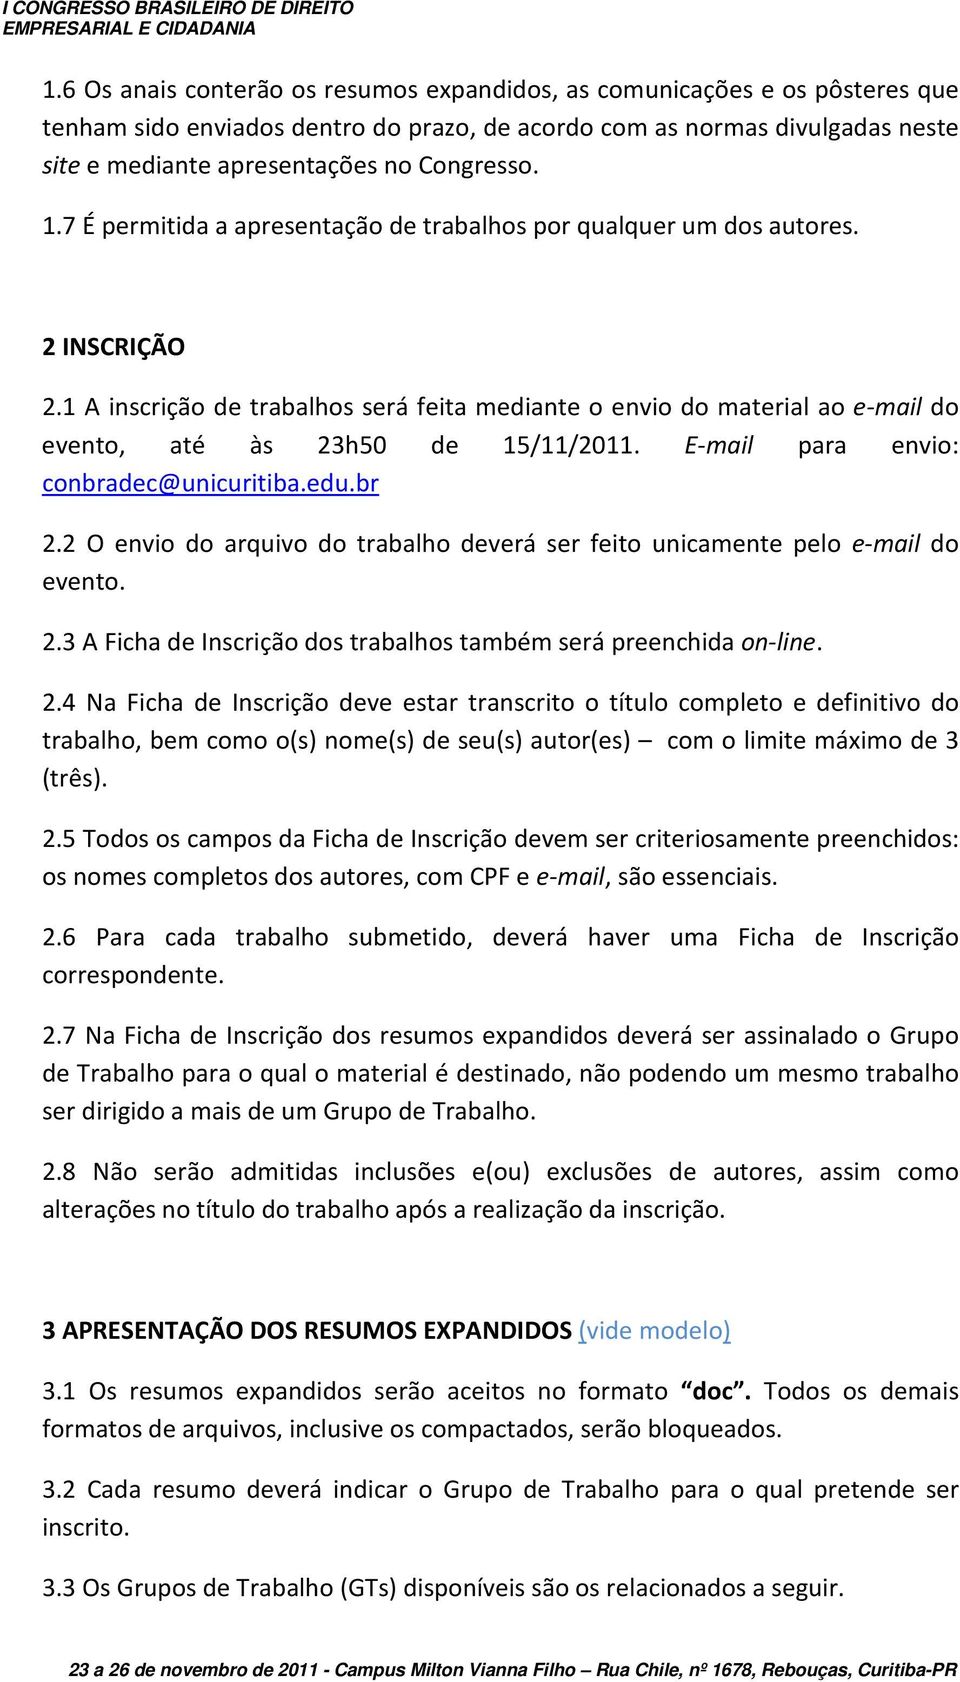 1 A inscrição de trabalhos será feita mediante o envio do material ao e-mail do evento, até às 23h50 de 15/11/2011. E-mail para envio: conbradec@unicuritiba.edu.br 2.